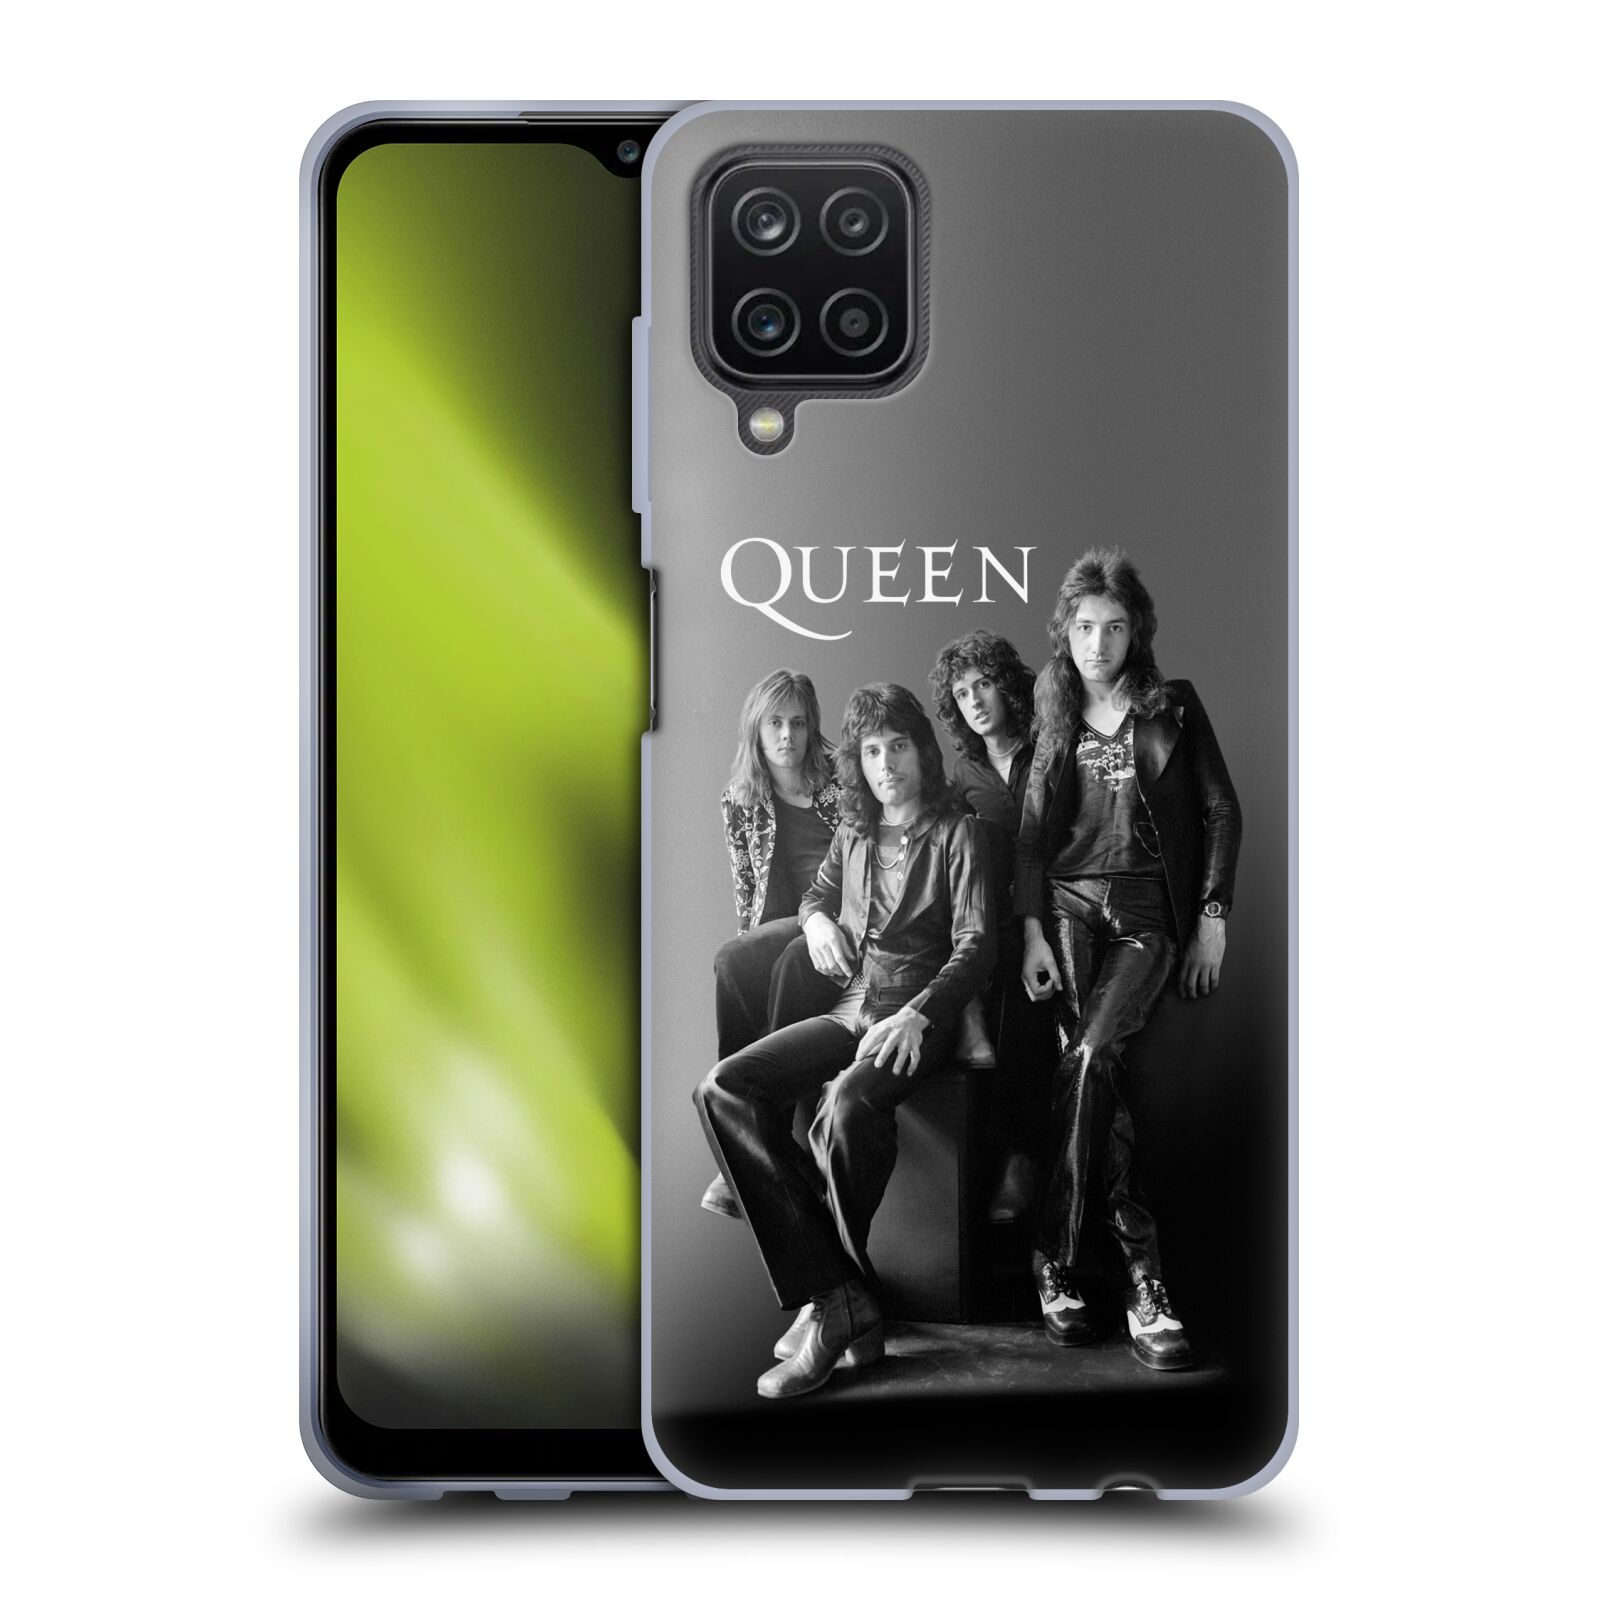 Silikonové pouzdro na mobil Samsung Galaxy A12 - Head Case - Queen - Skupina (Silikonový kryt, obal, pouzdro na mobilní telefon Samsung Galaxy A12 s motivem Queen - Skupina)